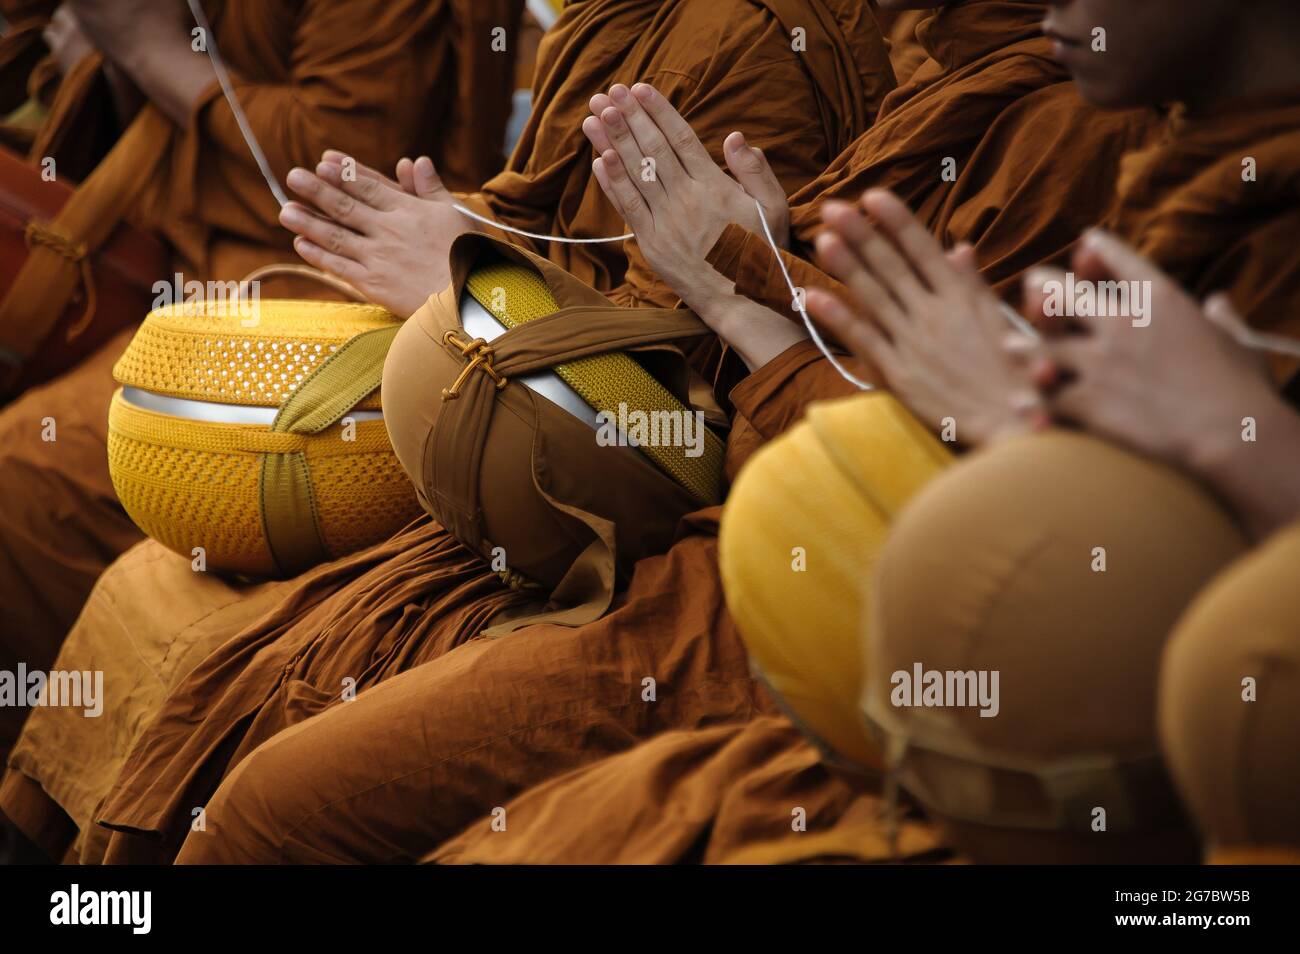 Viele Mönche drücken ihre Hände zusammen, um zu beten, bevor die Menschen Almosen an den Mönch geben Stockfoto